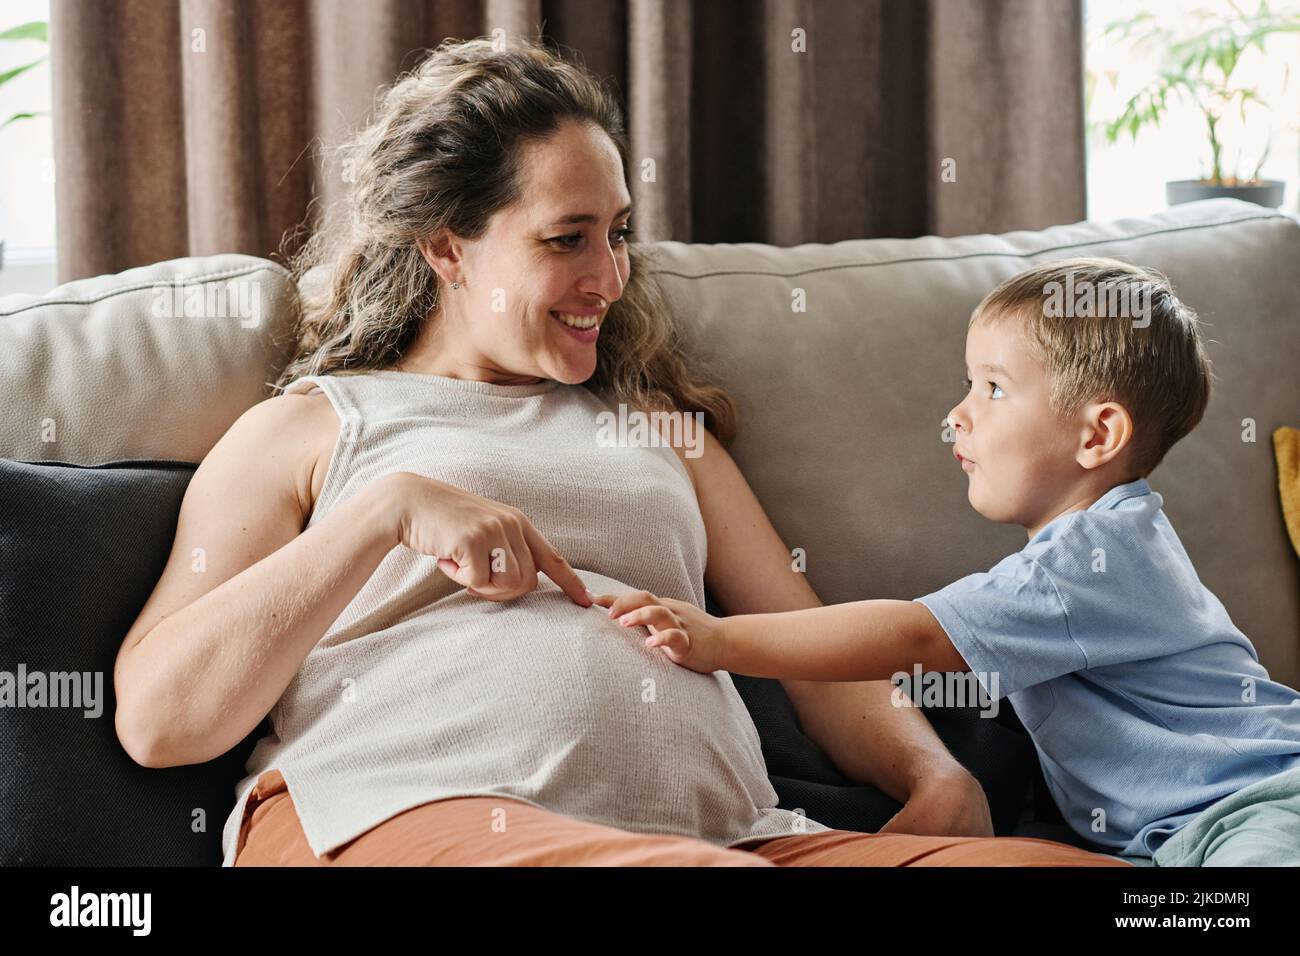 Der entzückende kleine Junge und seine Schwangere zeigen auf ihren Bauch, während sie zusammen spielen und über neues menschliches Leben im Inneren diskutieren Stockfoto